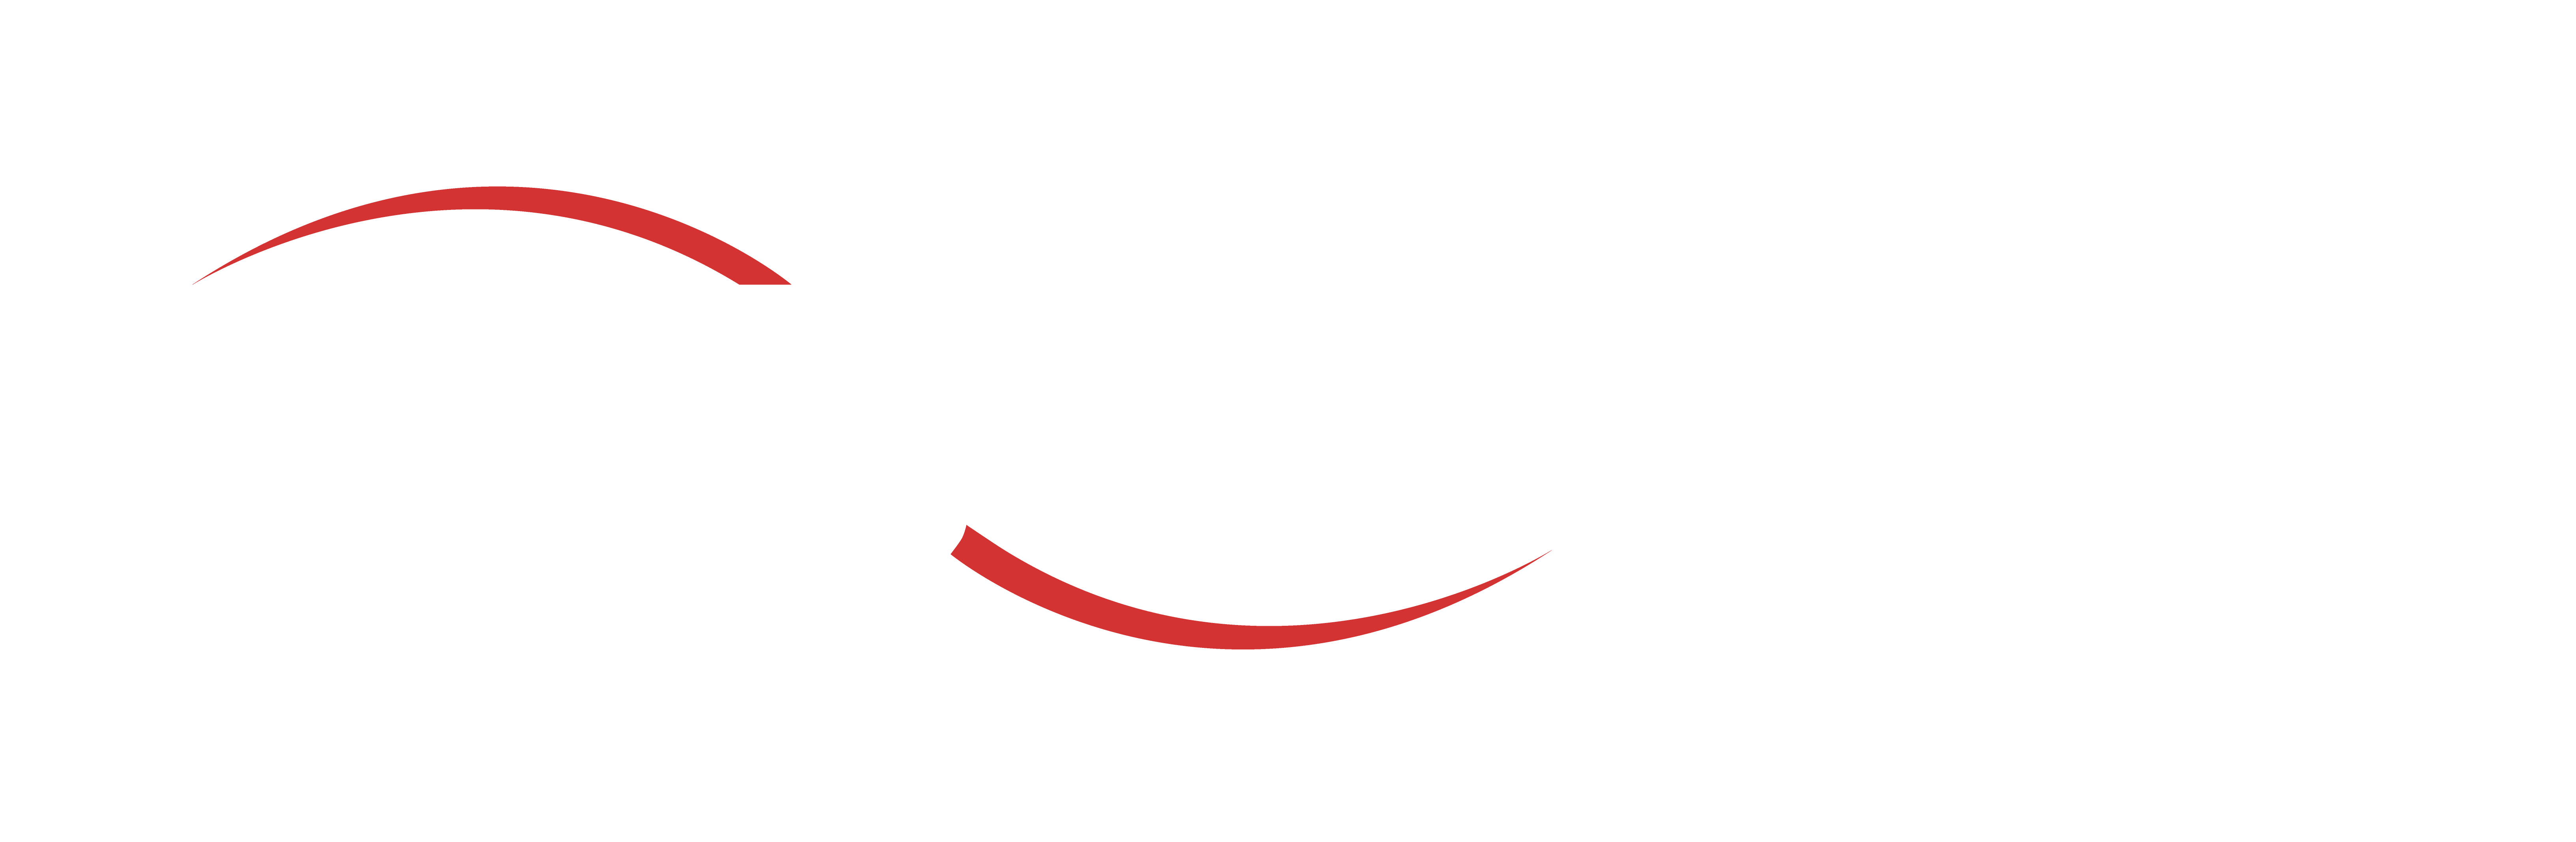 San Jose Dialysis Center Logo White